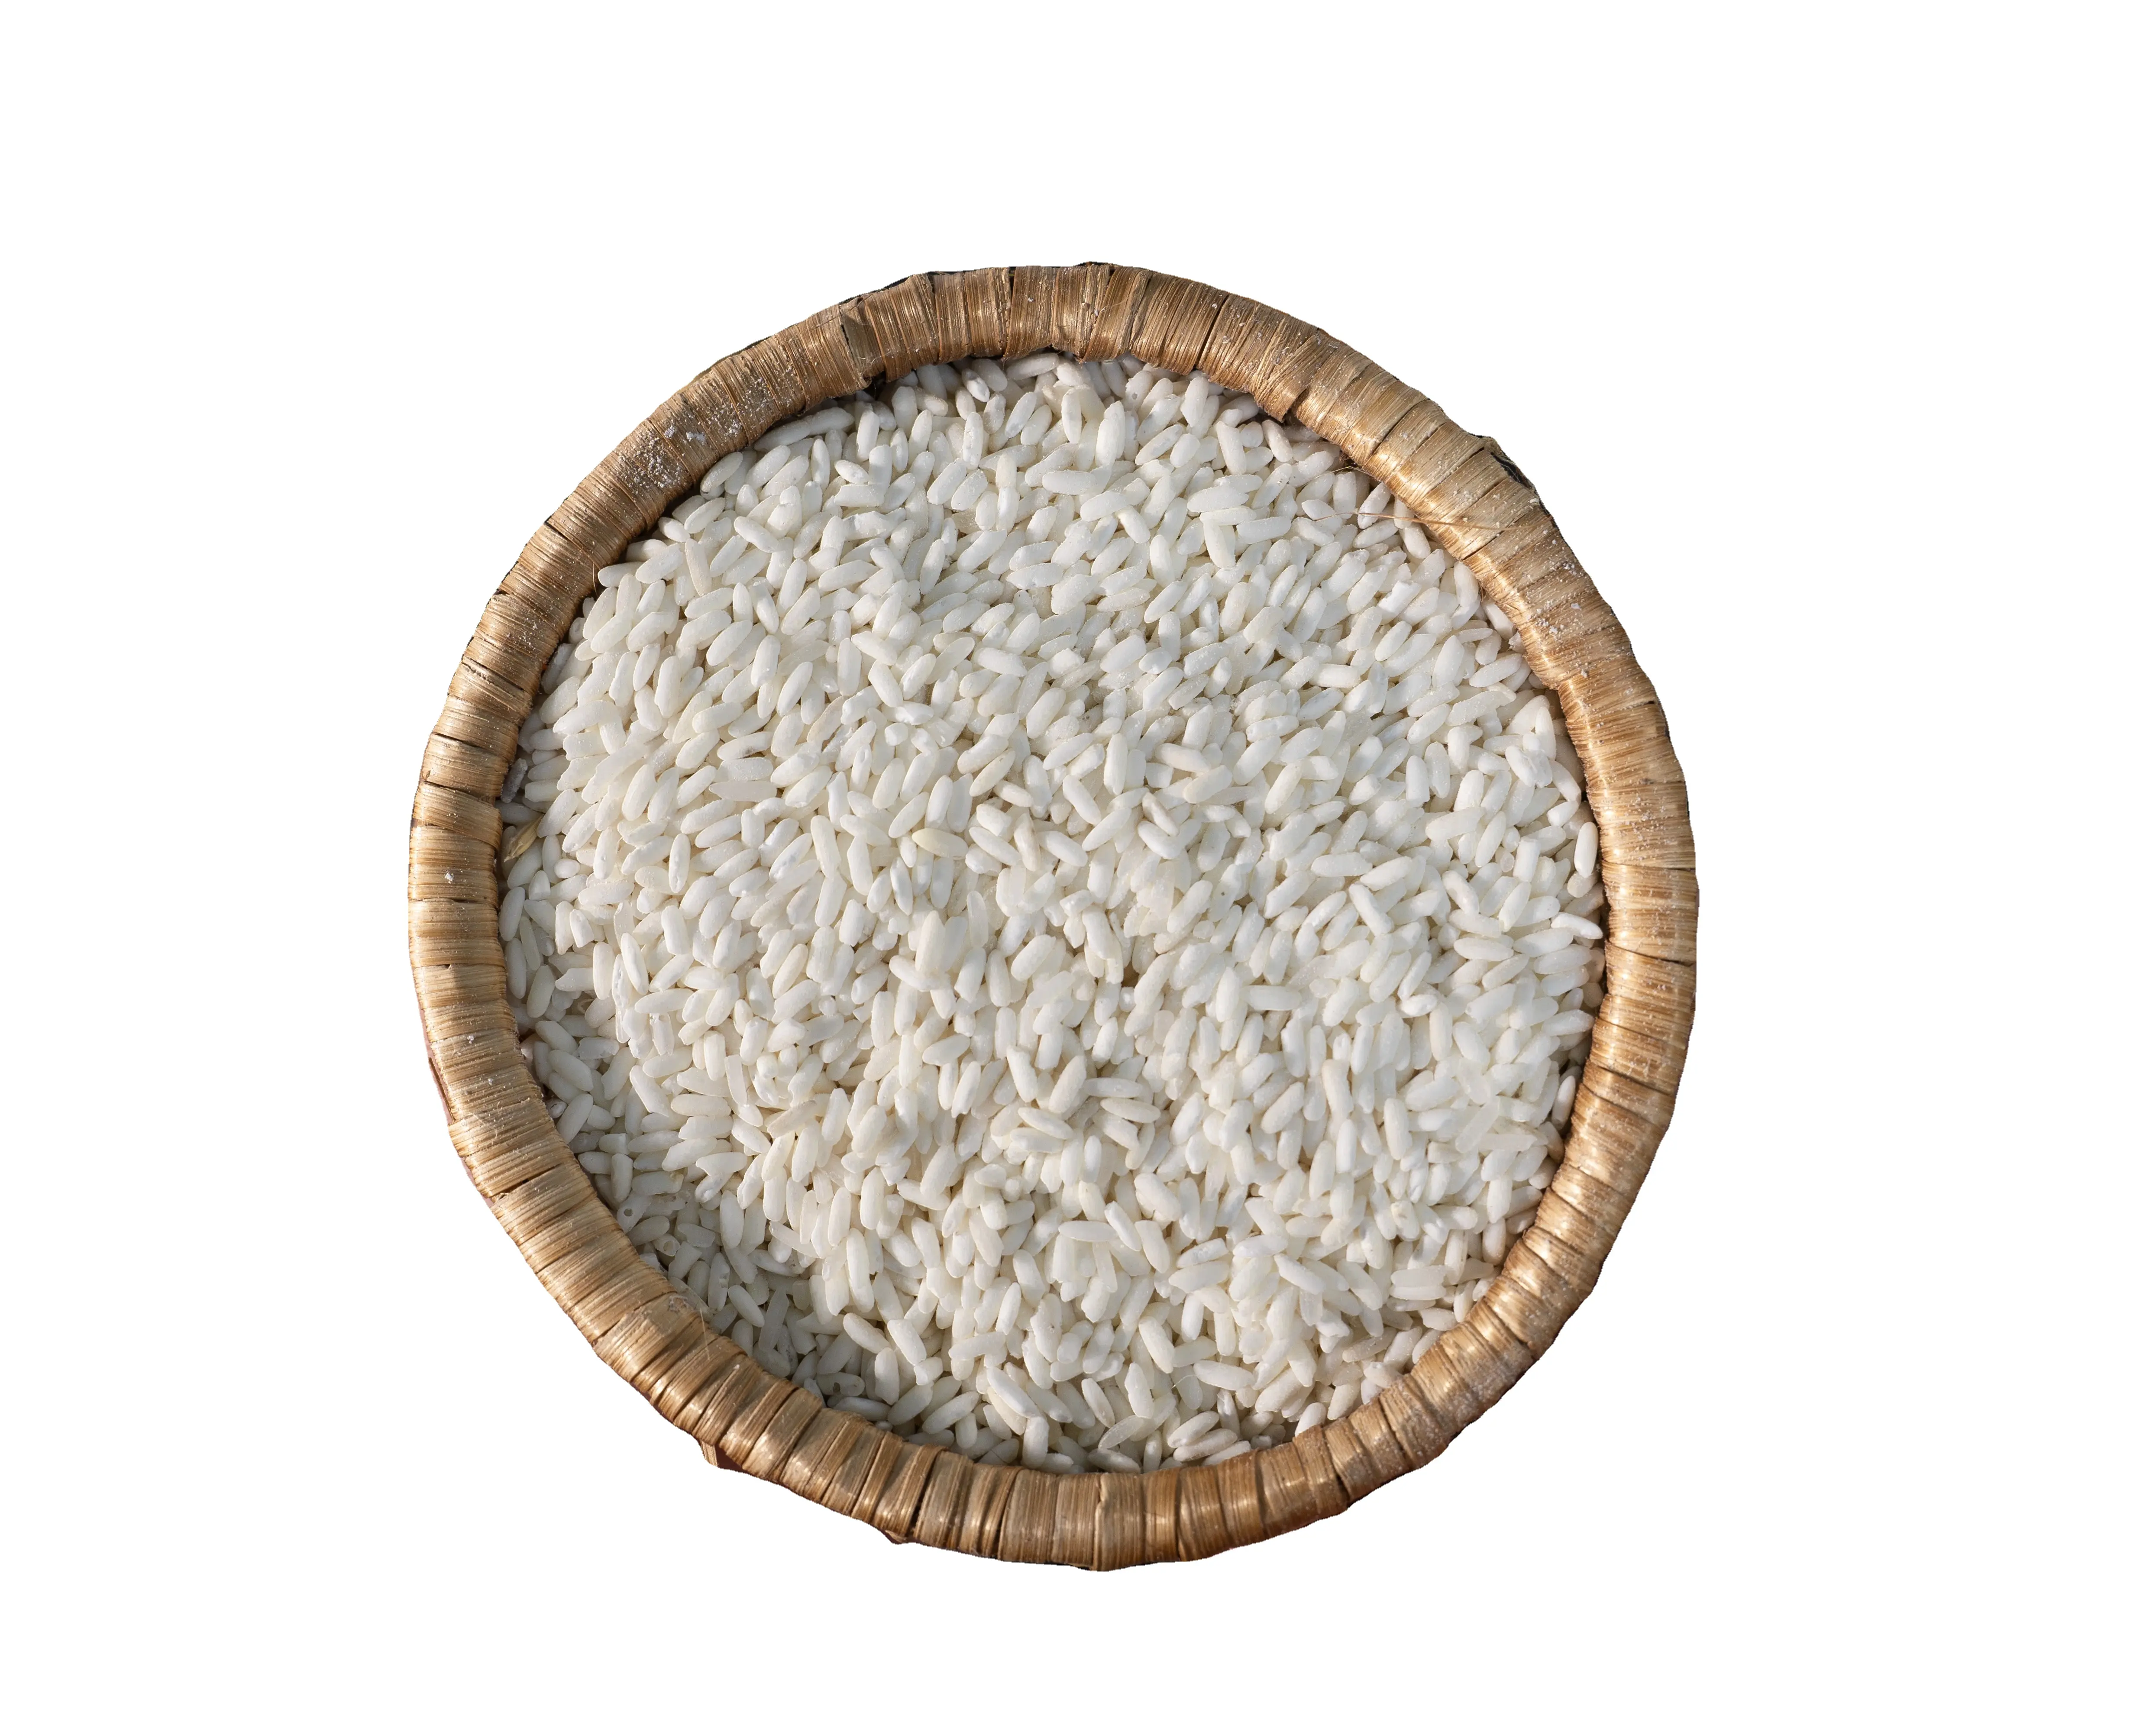 Üstün kalite, vietnamca pirinç için kaynaklı vietnam'dan zarif kırık yapışkan pirinç